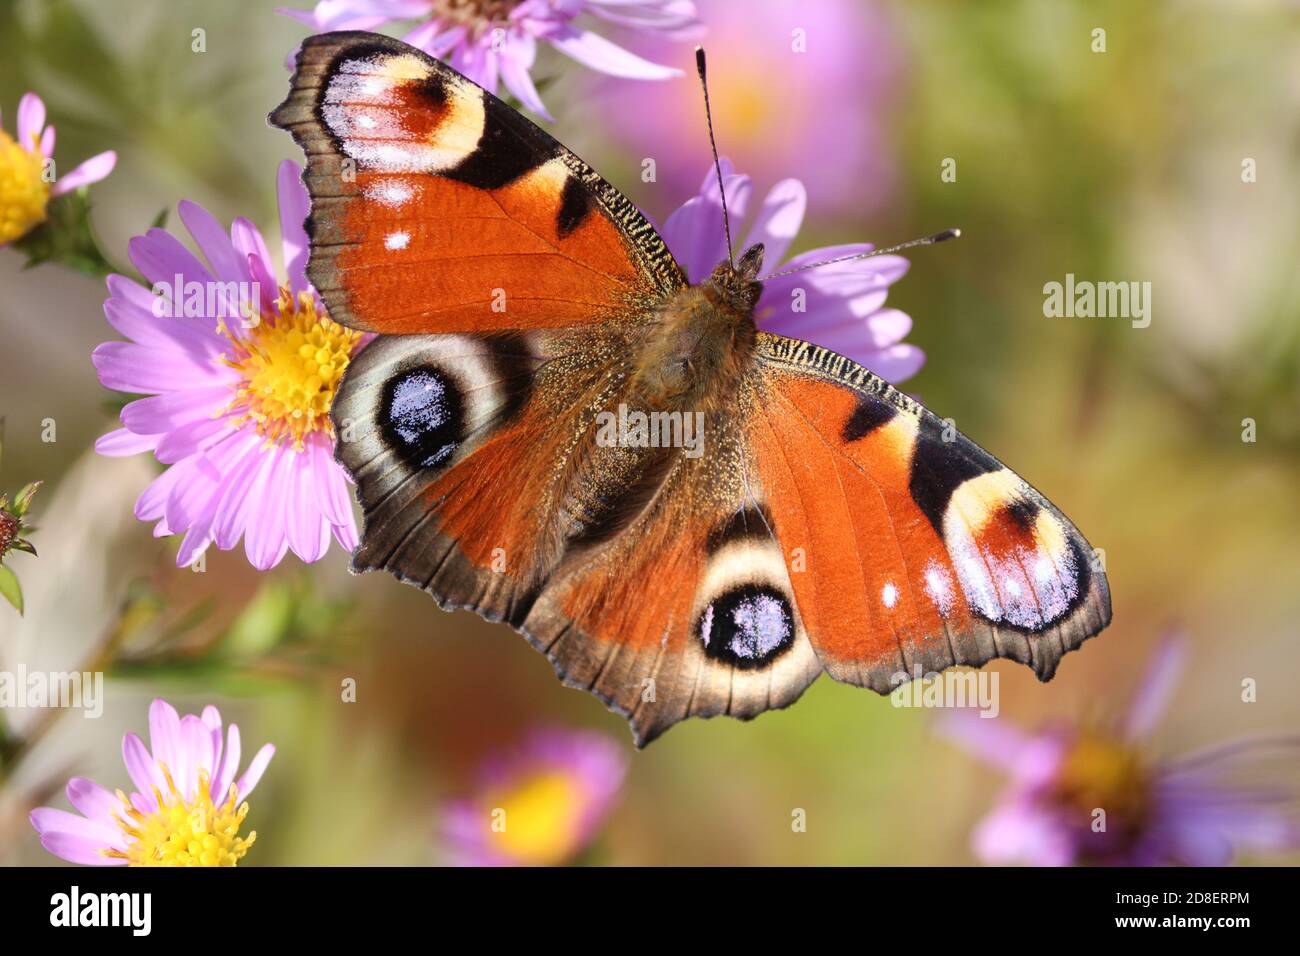 Ein heller Pfauenschmetterling mit ausgebreiteten Flügeln von rot-orange-schwarz-weiß-lila Farbe sitzt auf lila Symphyotrichum novi-belgii Blumen an einem Herbsttag. Stockfoto